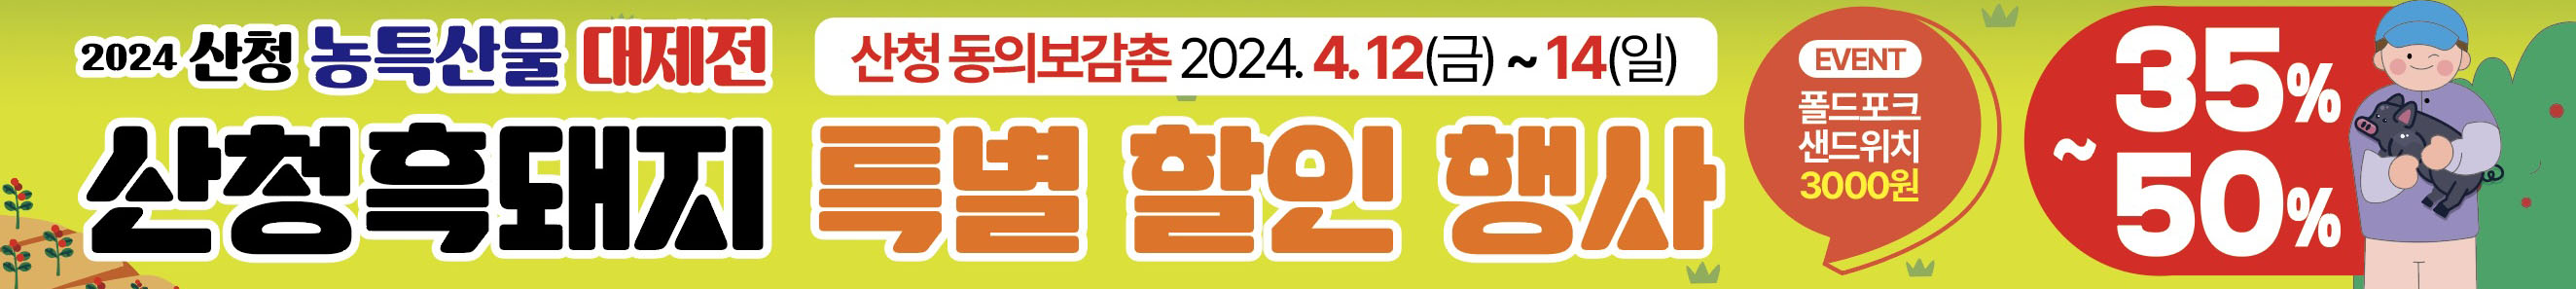 산청군, ‘2024 산청흑돼지&산나물 페스타’ 개최 2